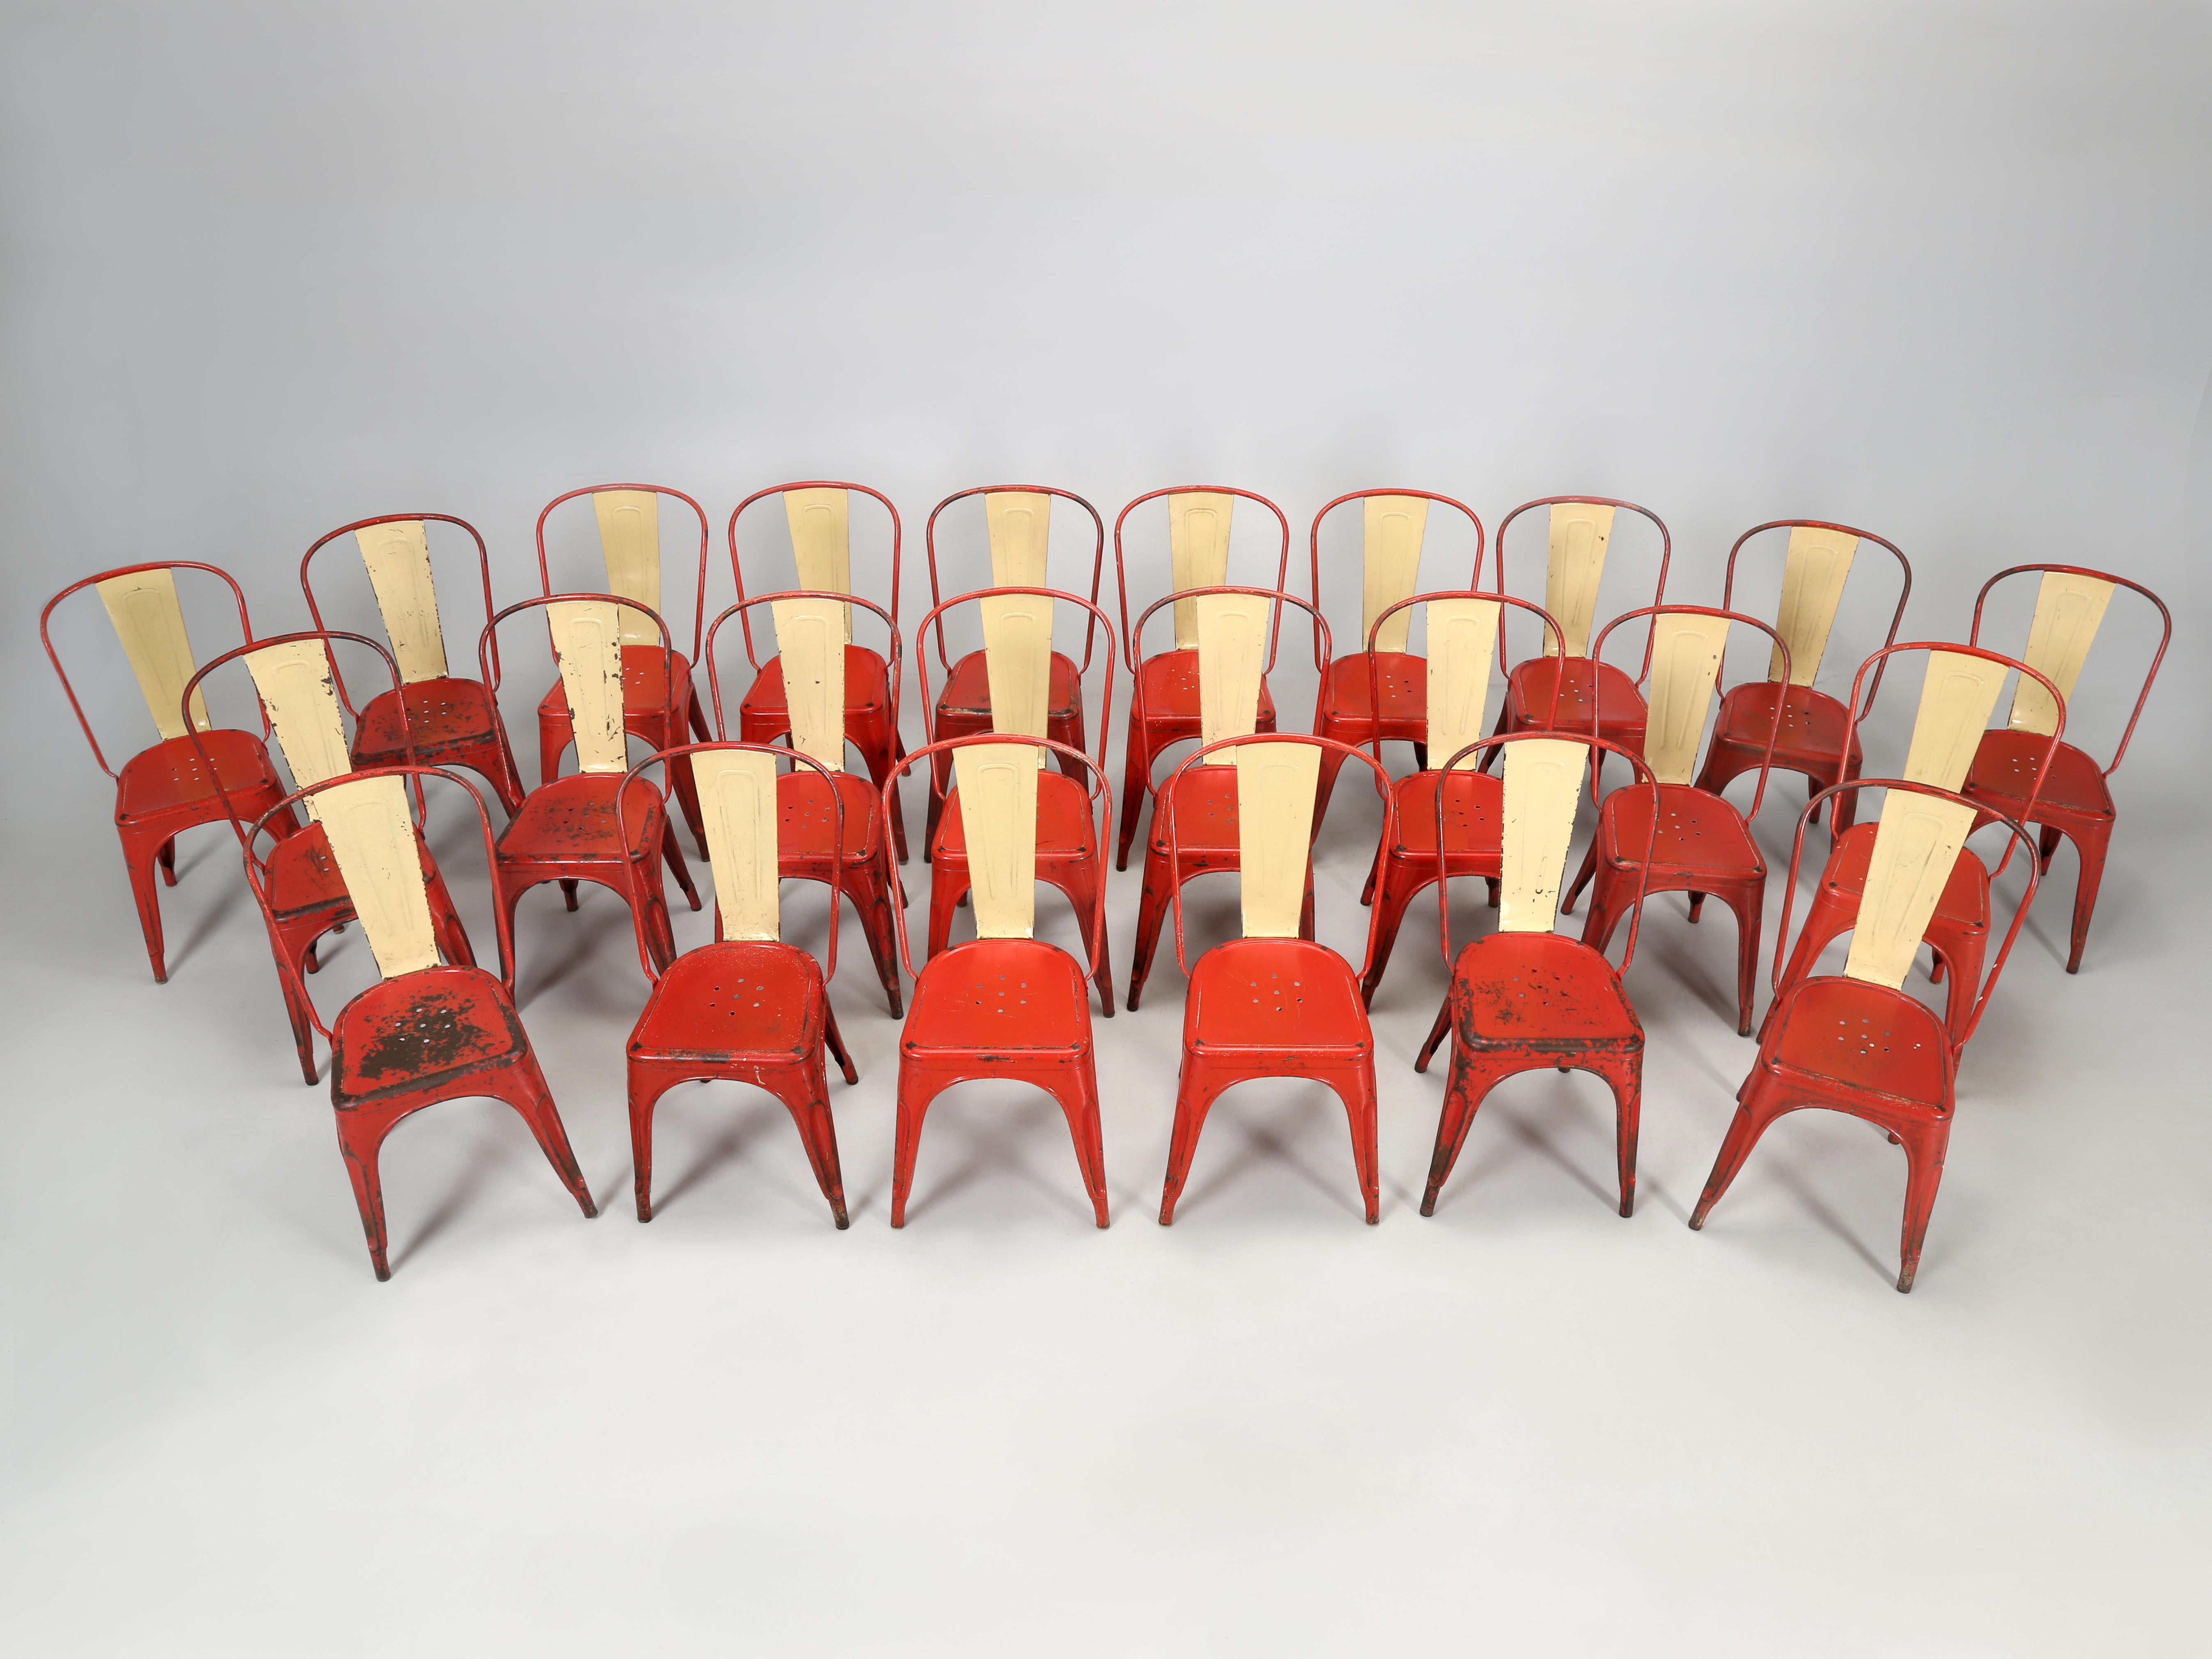 Authentische handgefertigte europäische Tolix-Stühle, komplett mit dem originalen goldenen TOLIX Label. Während einige Händler behaupten, ein paar Sets auf Lager zu haben, oder vielleicht sogar ein paar Dutzend, haben wir nicht Dutzende oder